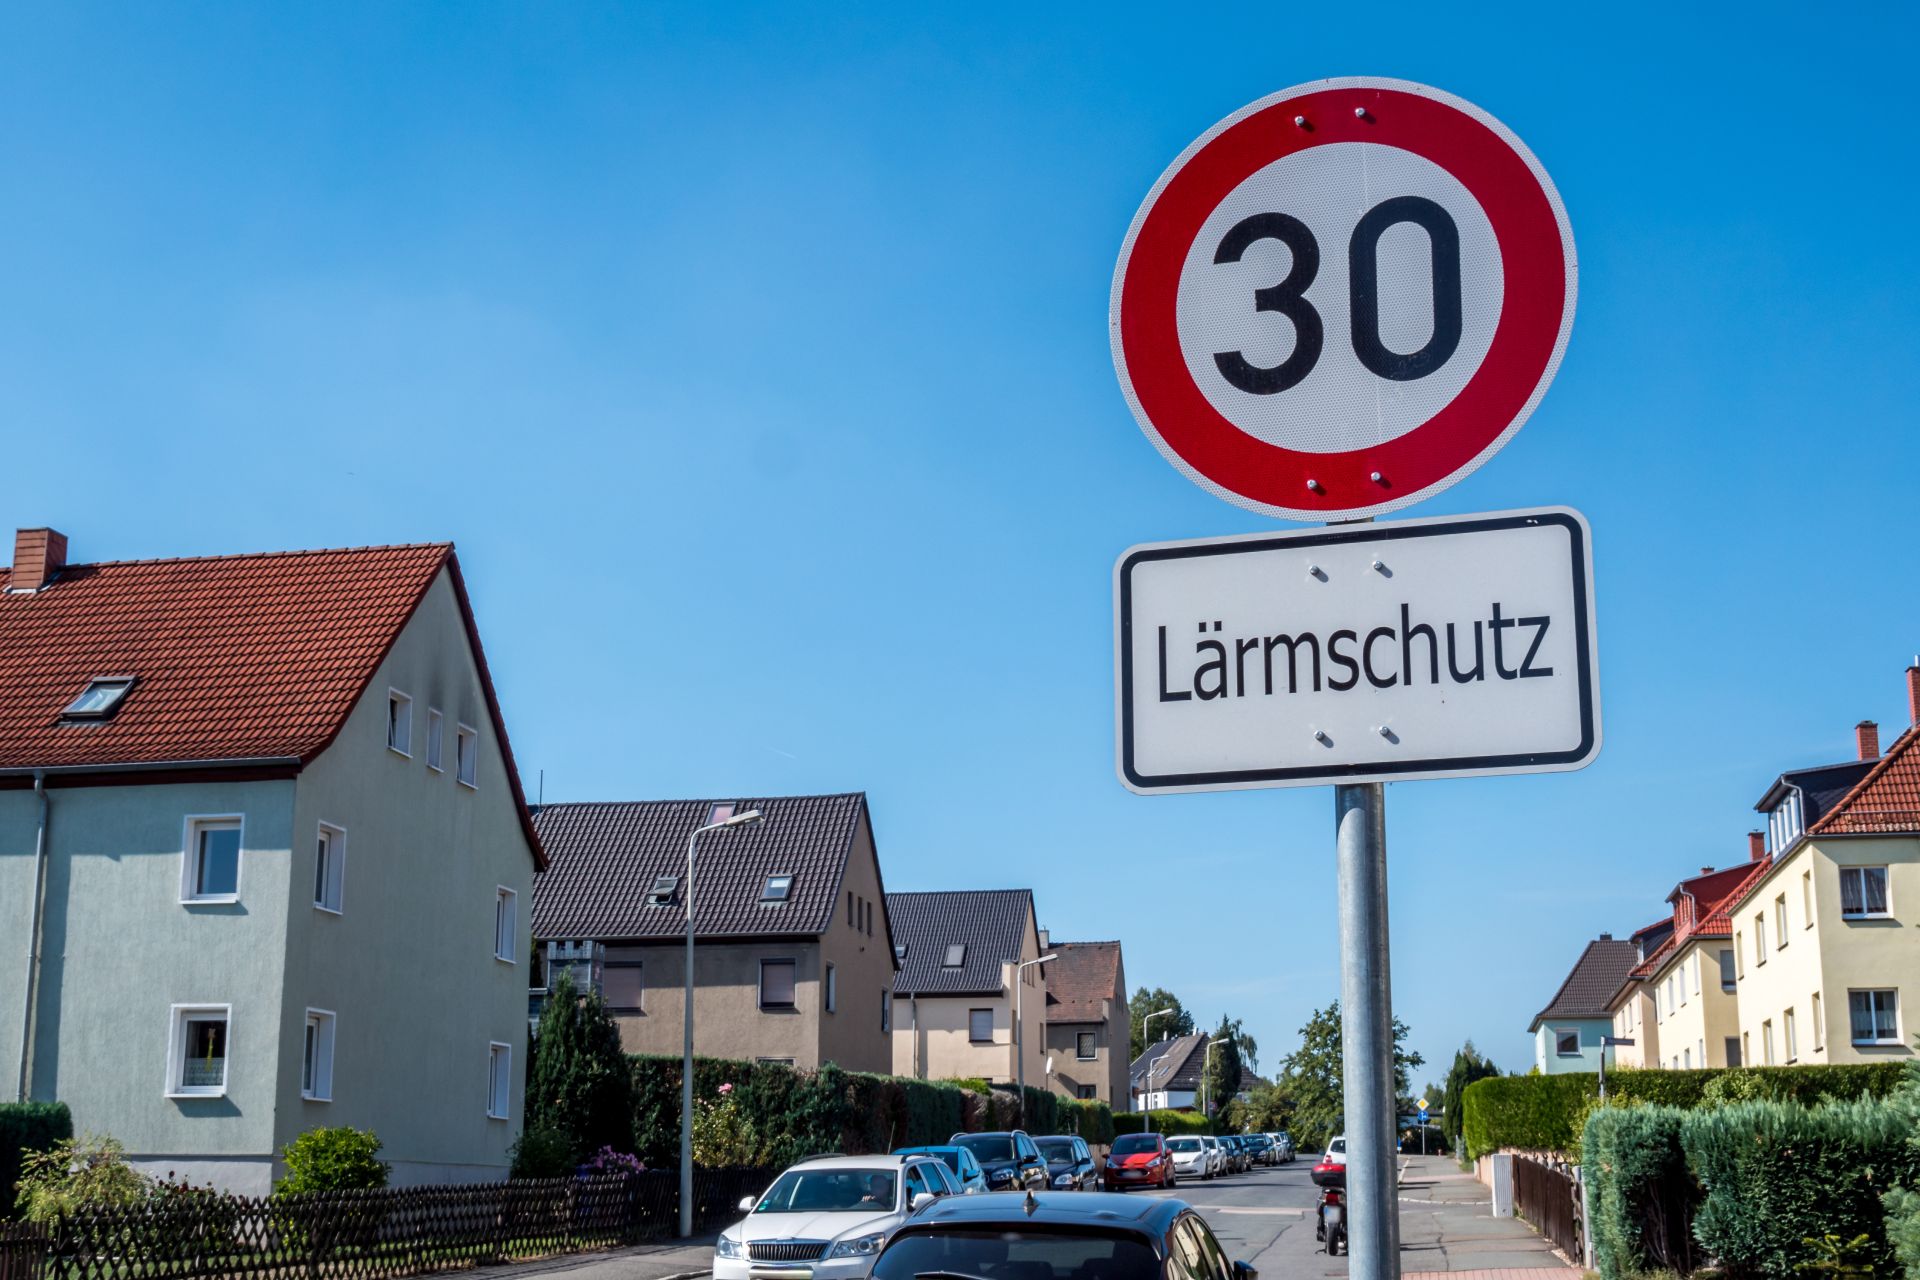 Straßenschild Geschwindigkeitsbegrenzung auf 30km/h mit Zusatzschild "Lärmschutz" in Wohngebietsstraße vor blauem Himmel.